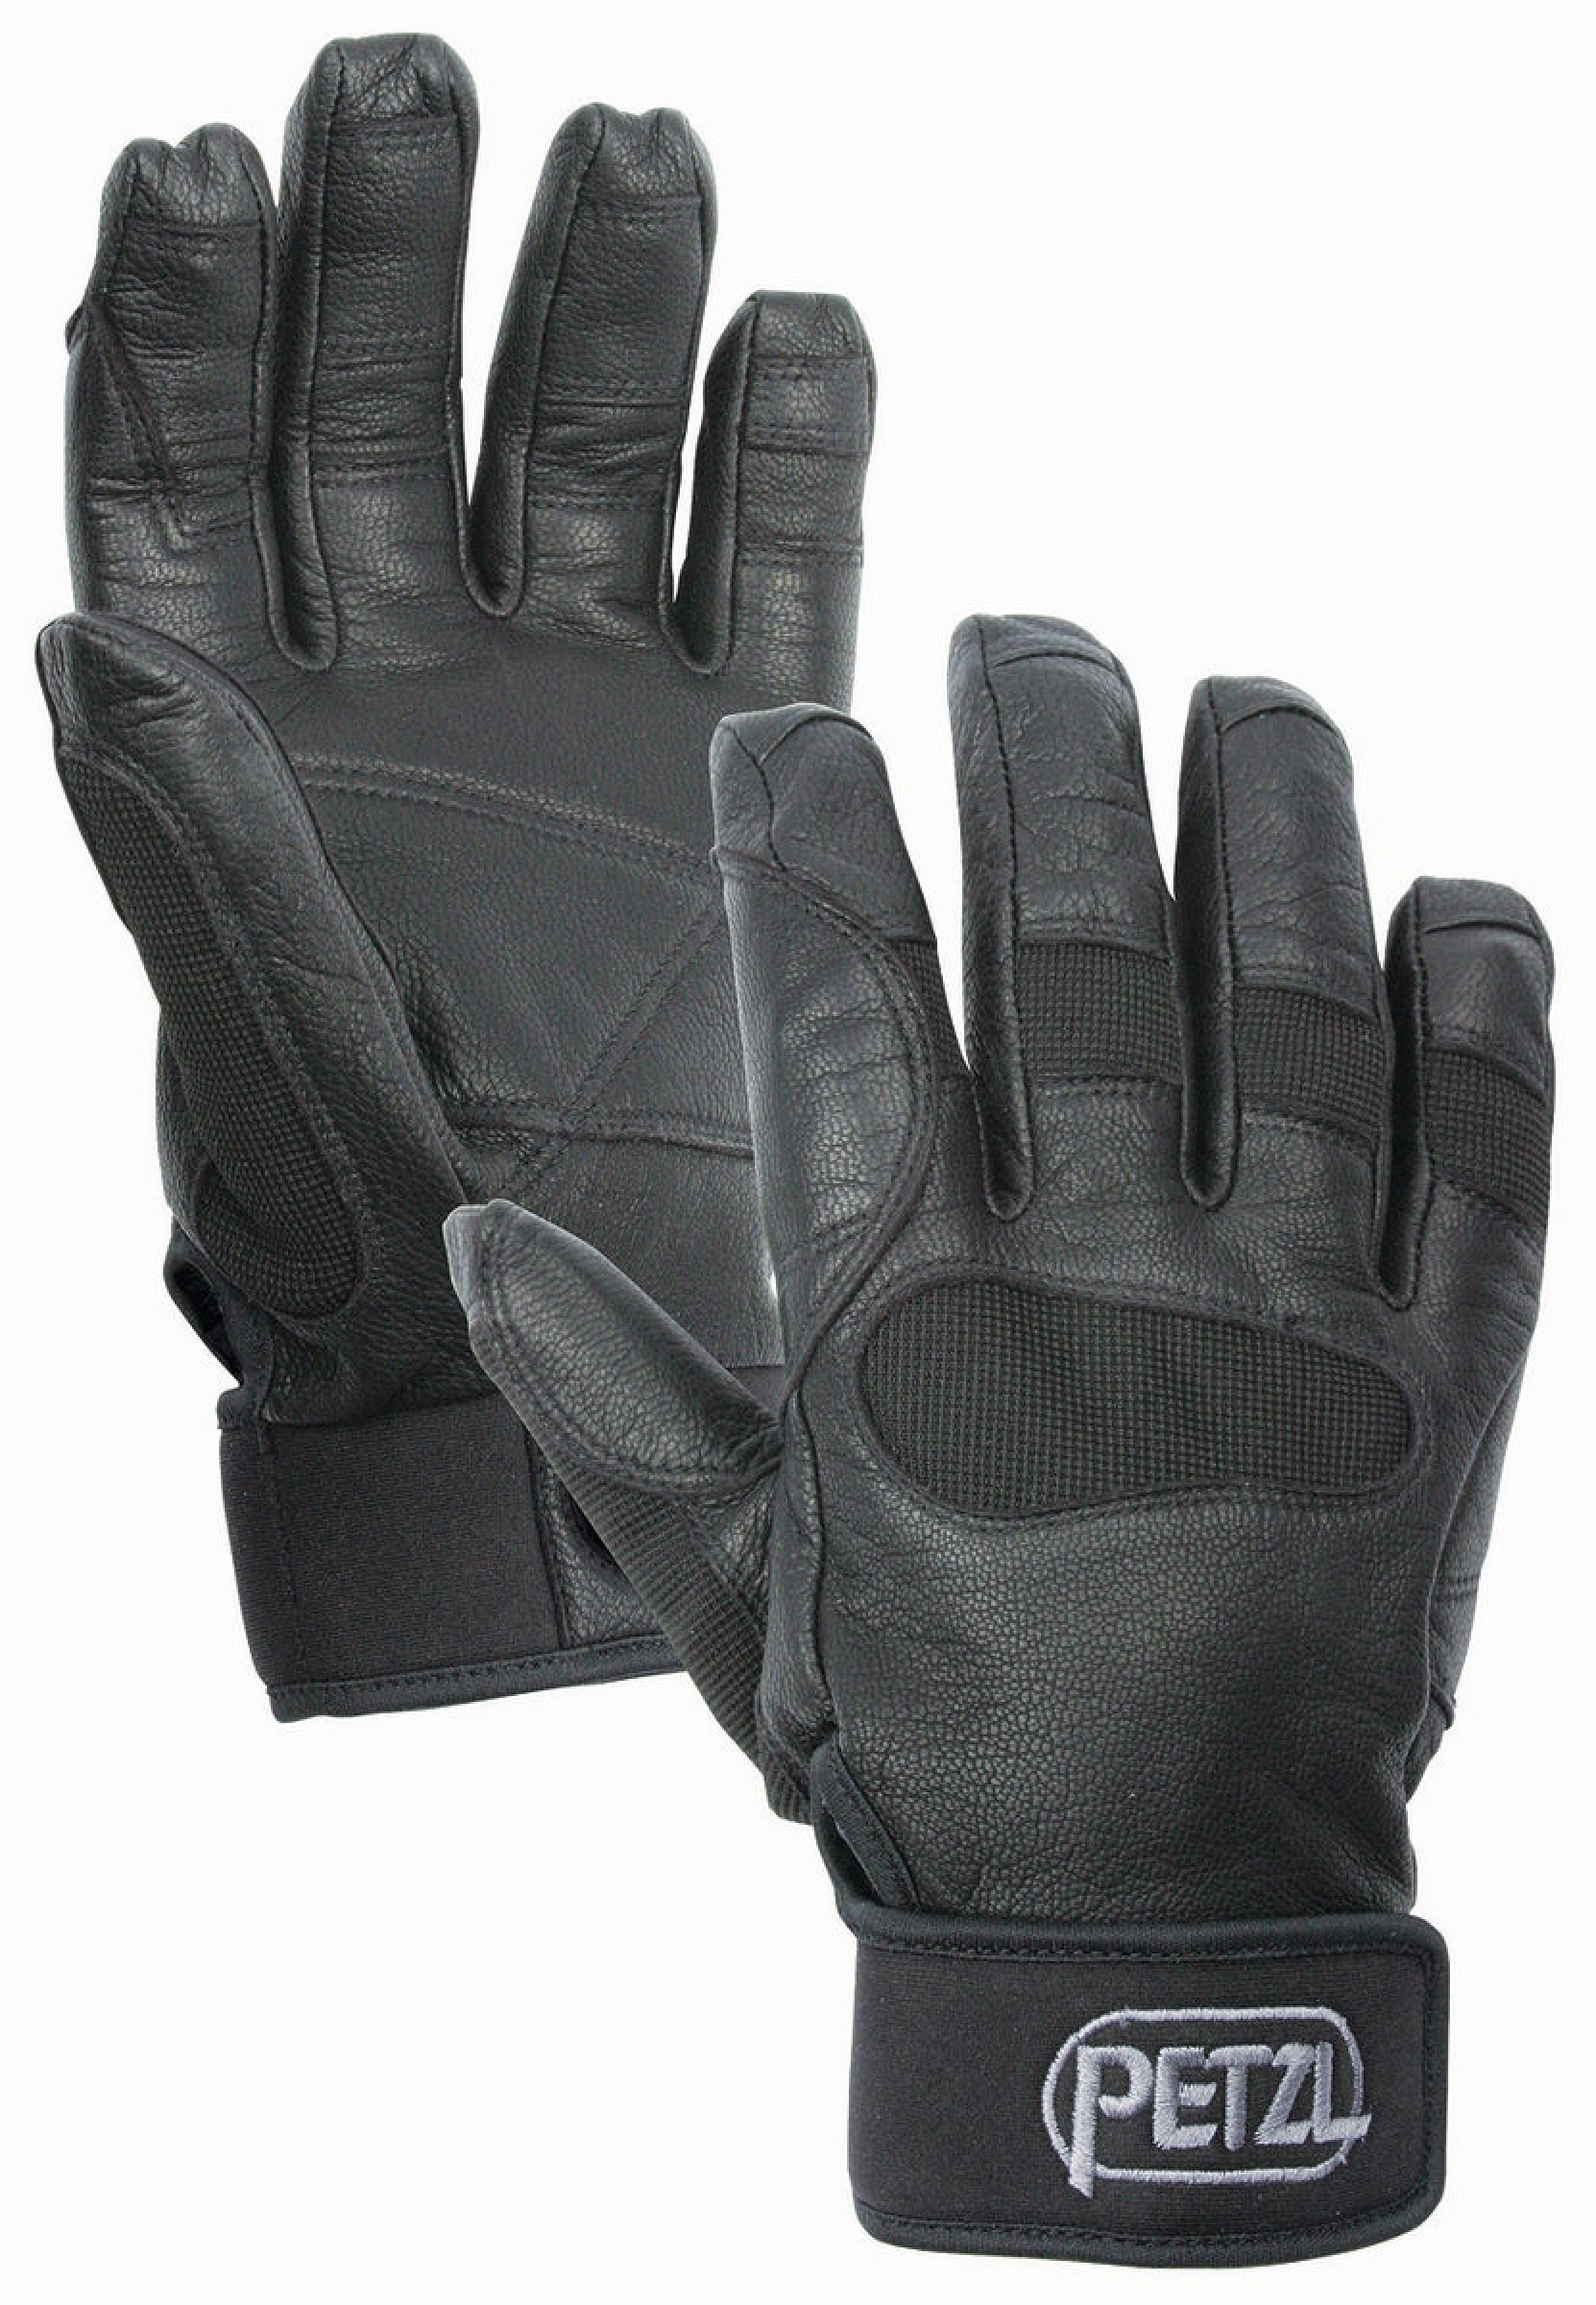 Petzl Handschuhe Cordex Plus Schwarz verschiedene Größen